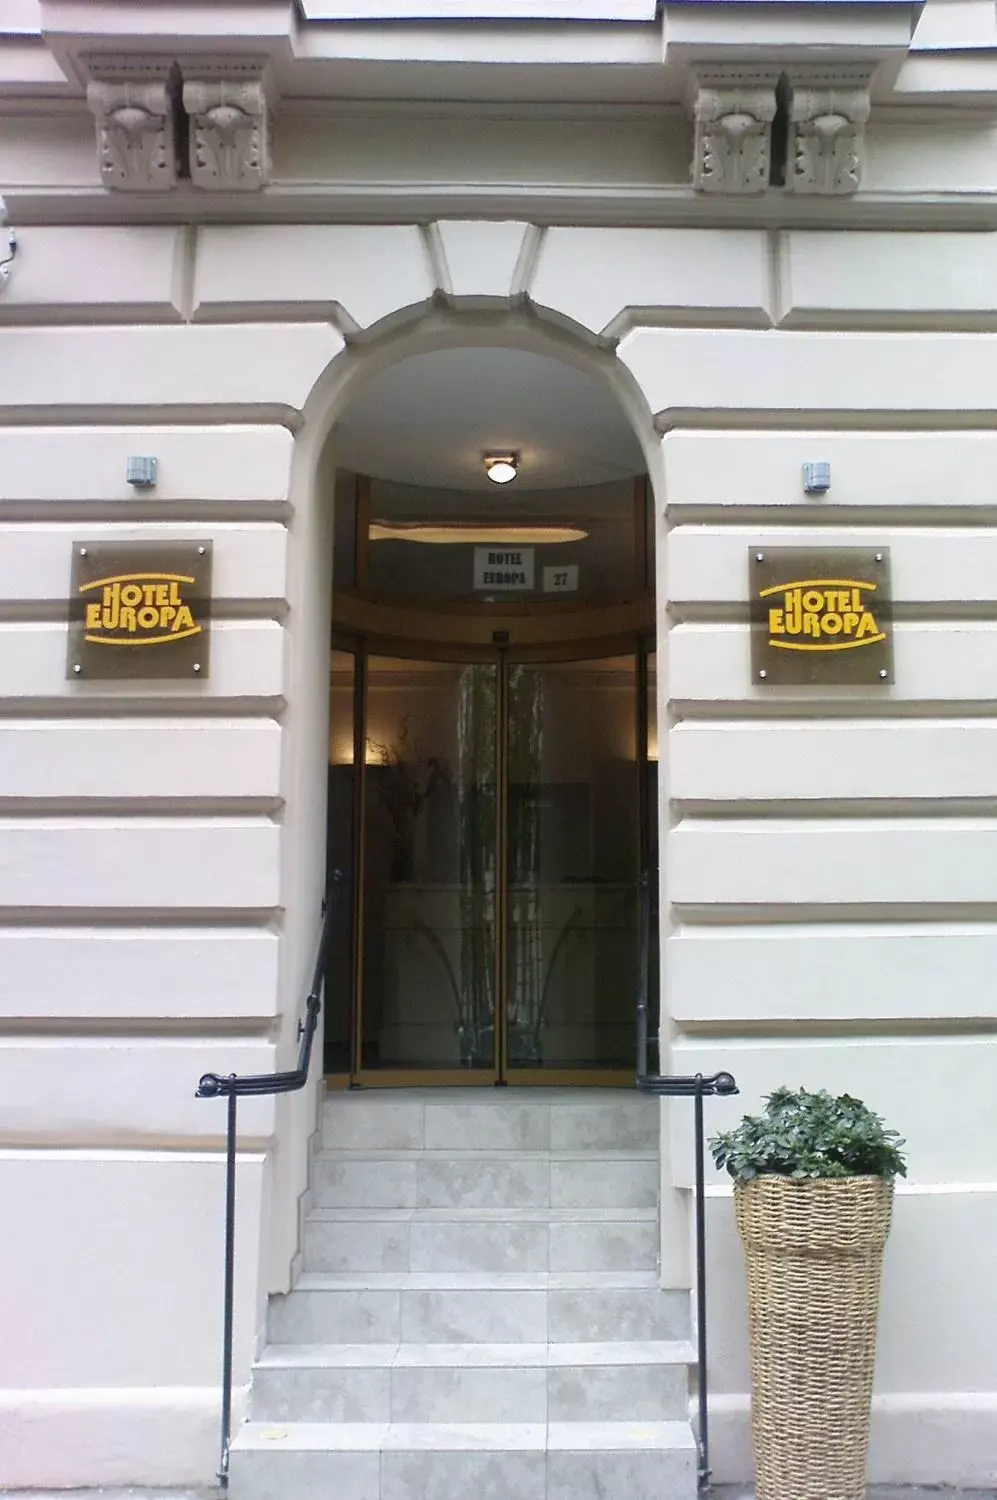 Facade/entrance in Hotel Europa